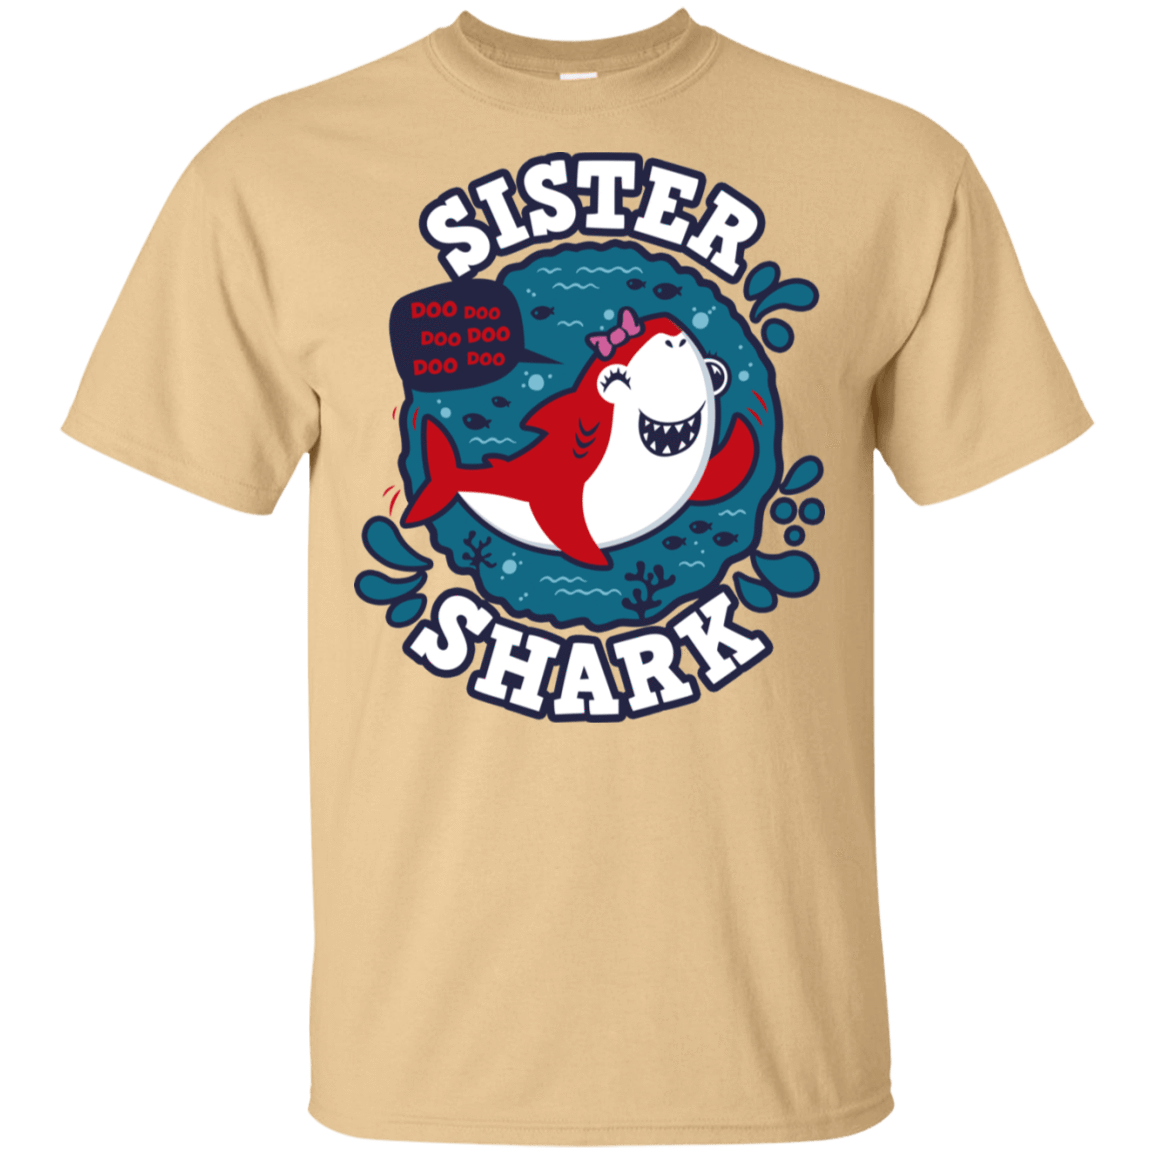 T-Shirts Vegas Gold / S Shark Family trazo - Sister T-Shirt